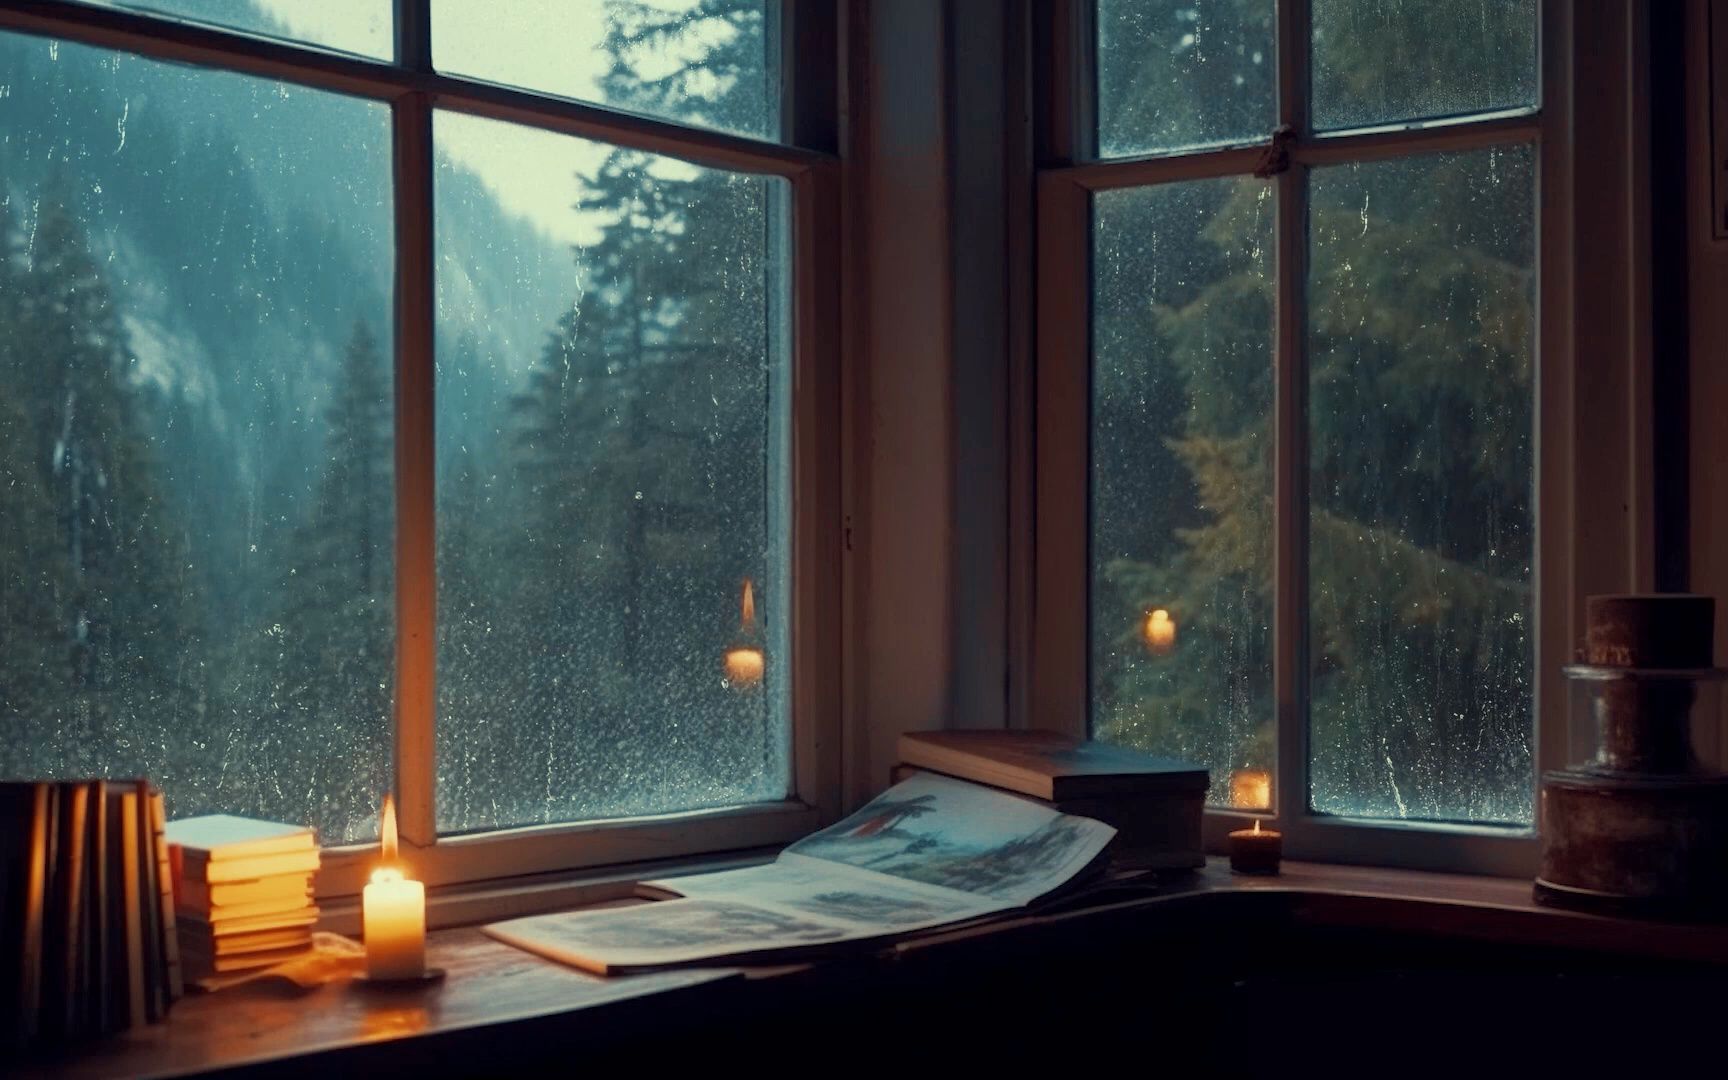 在森林中的窗台听雨学习,入睡,放松丨雨声白噪音助眠